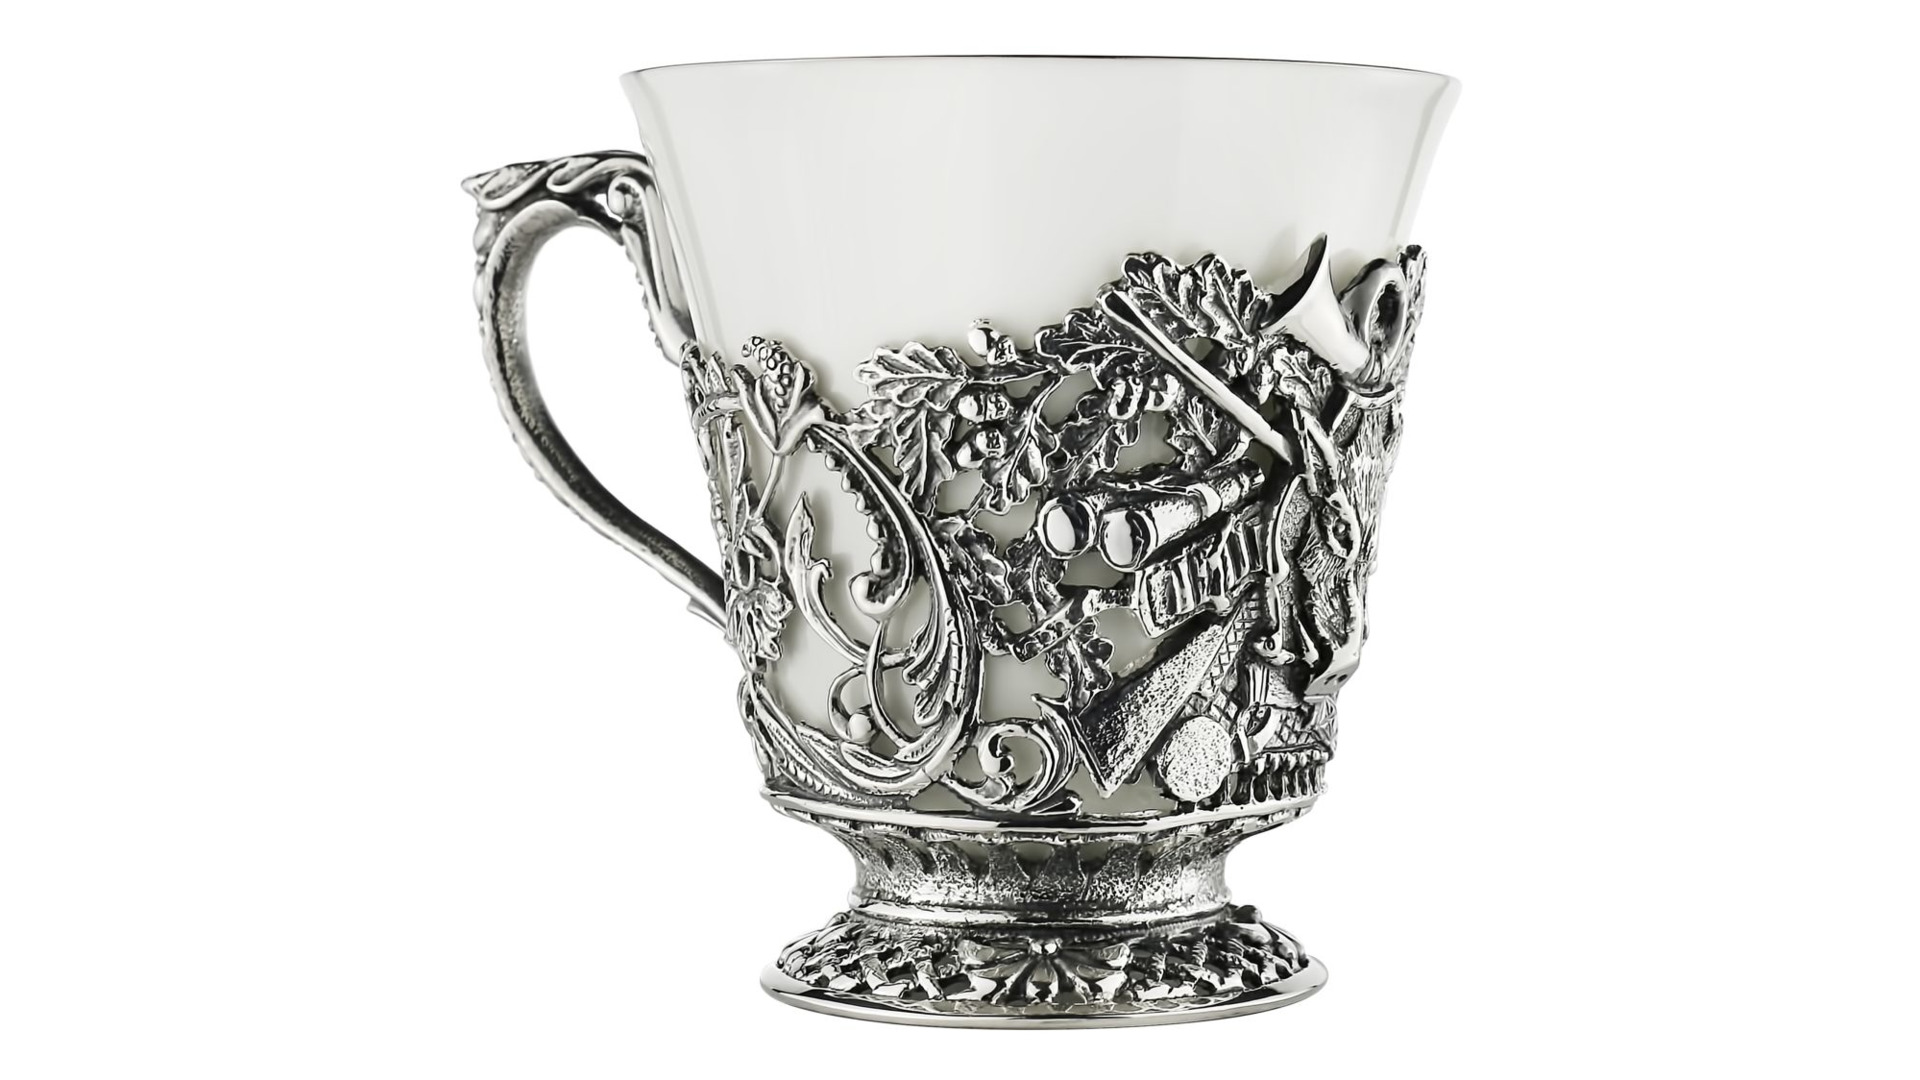 Набор чайный в футляре Кольчугинский мельхиор Охотничий, 12 предметов, с посеребрением и чернением,